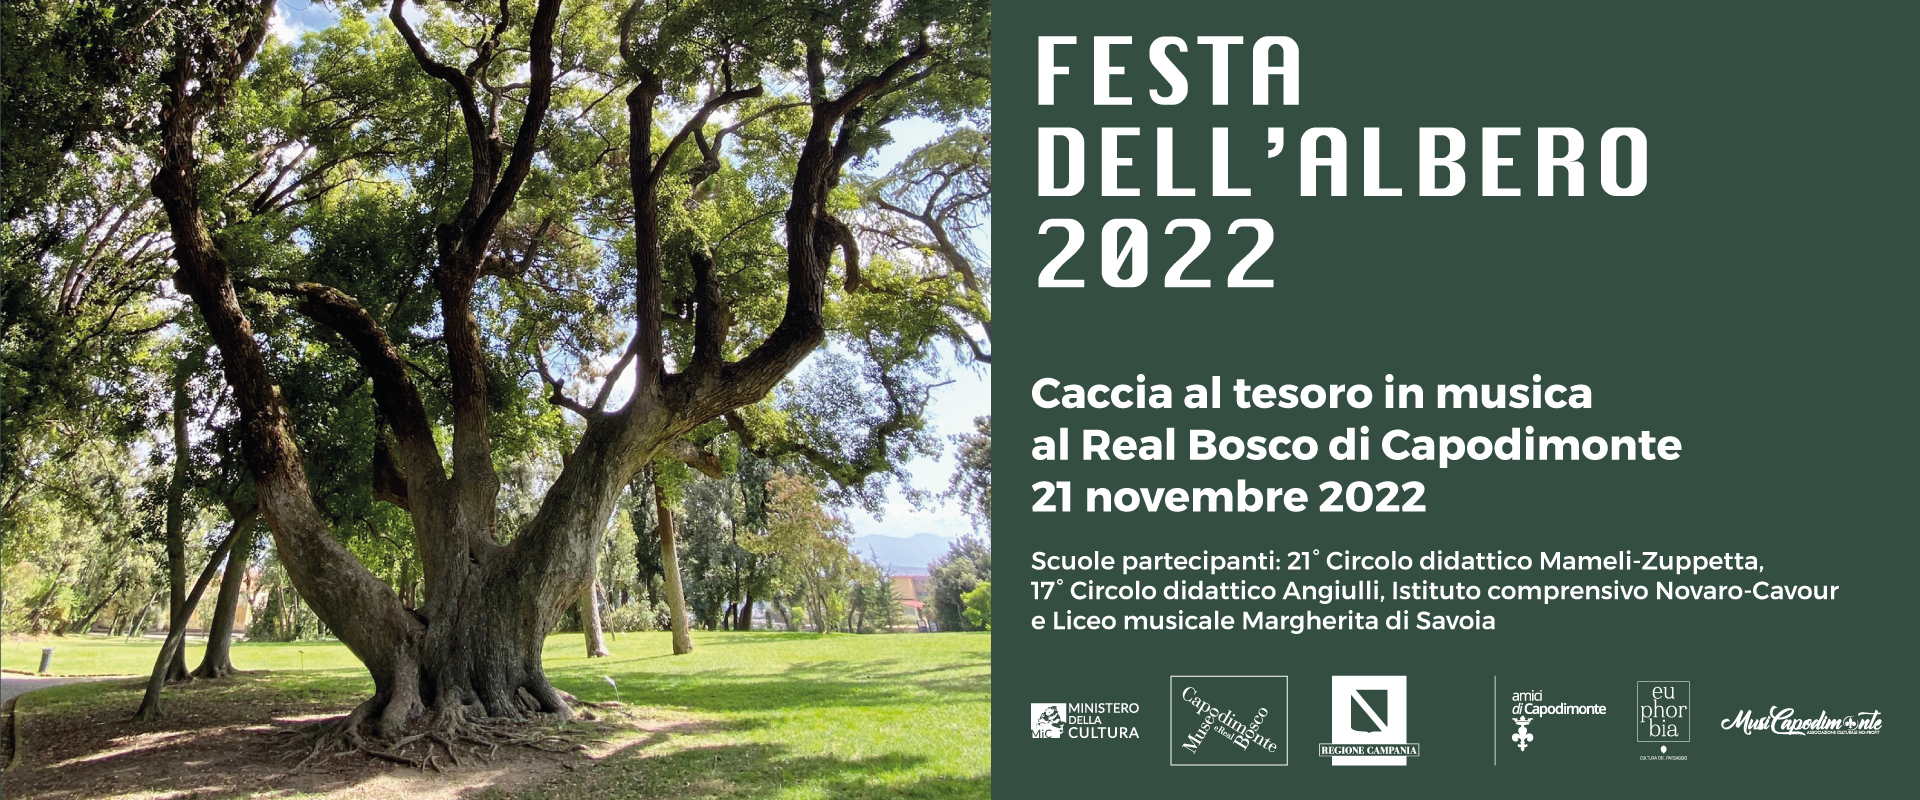 Al momento stai visualizzando <strong>FESTA DELL’ALBERO 2022<br>Indovina…l’albero!<br>Caccia al tesoro in musica</strong><h2></p>21 novembre 2022 ore 10.00</p>Real Bosco di Capodimonte<br>Giardino dei Principi</p>Promossa dal<br>Museo e Real Bosco di Capodimonte<br>con Amici di Capodimonte<br>Euphorbia srl<br>e MusiCapodimonte</h2>